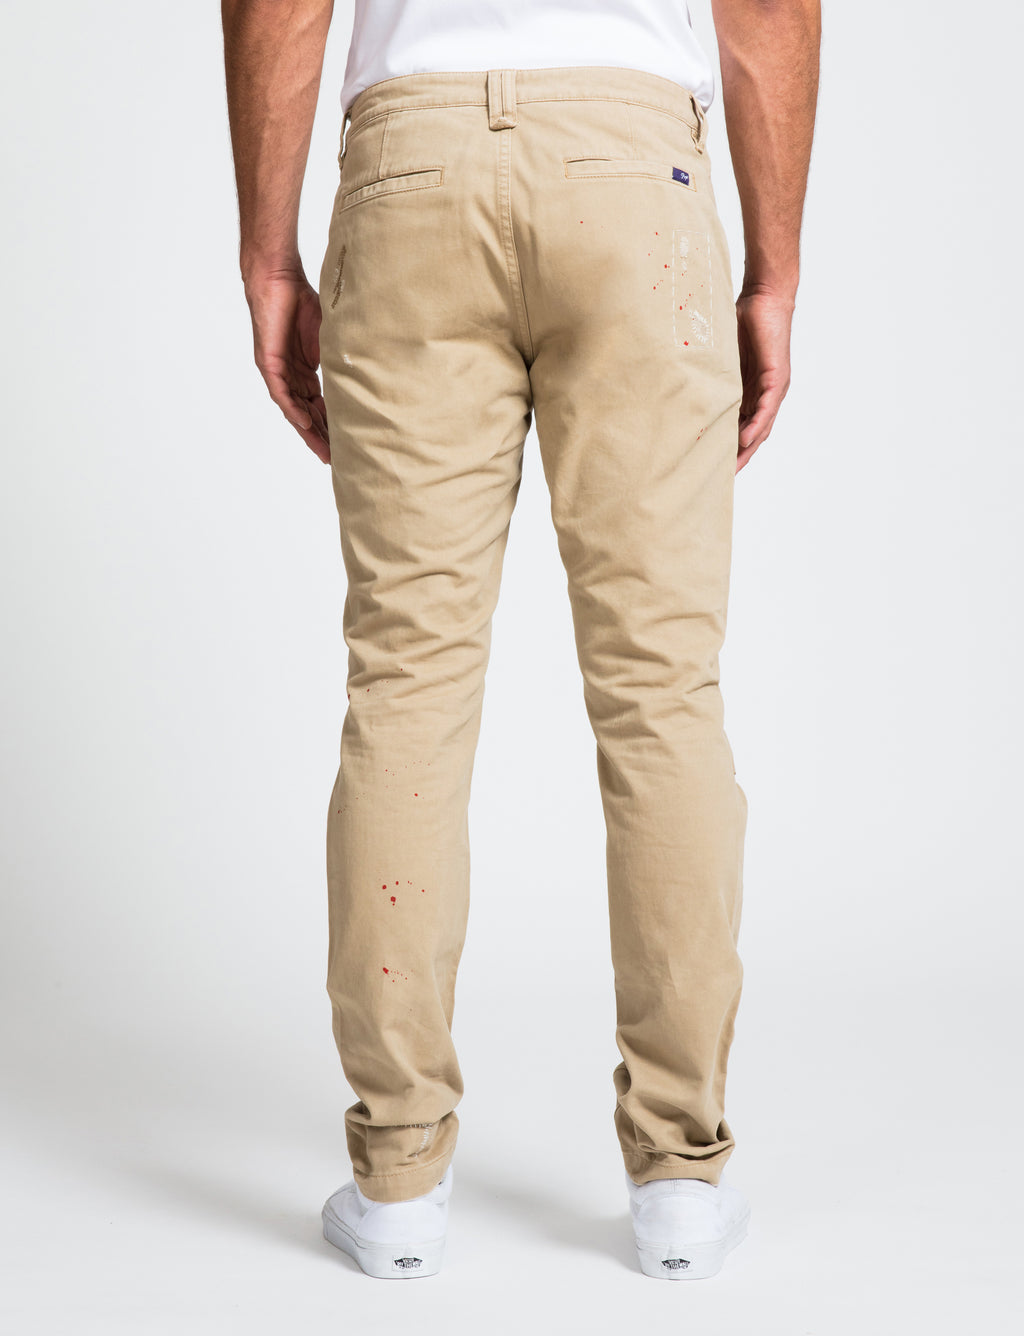 Designer Men's Pants | Prps Jeans